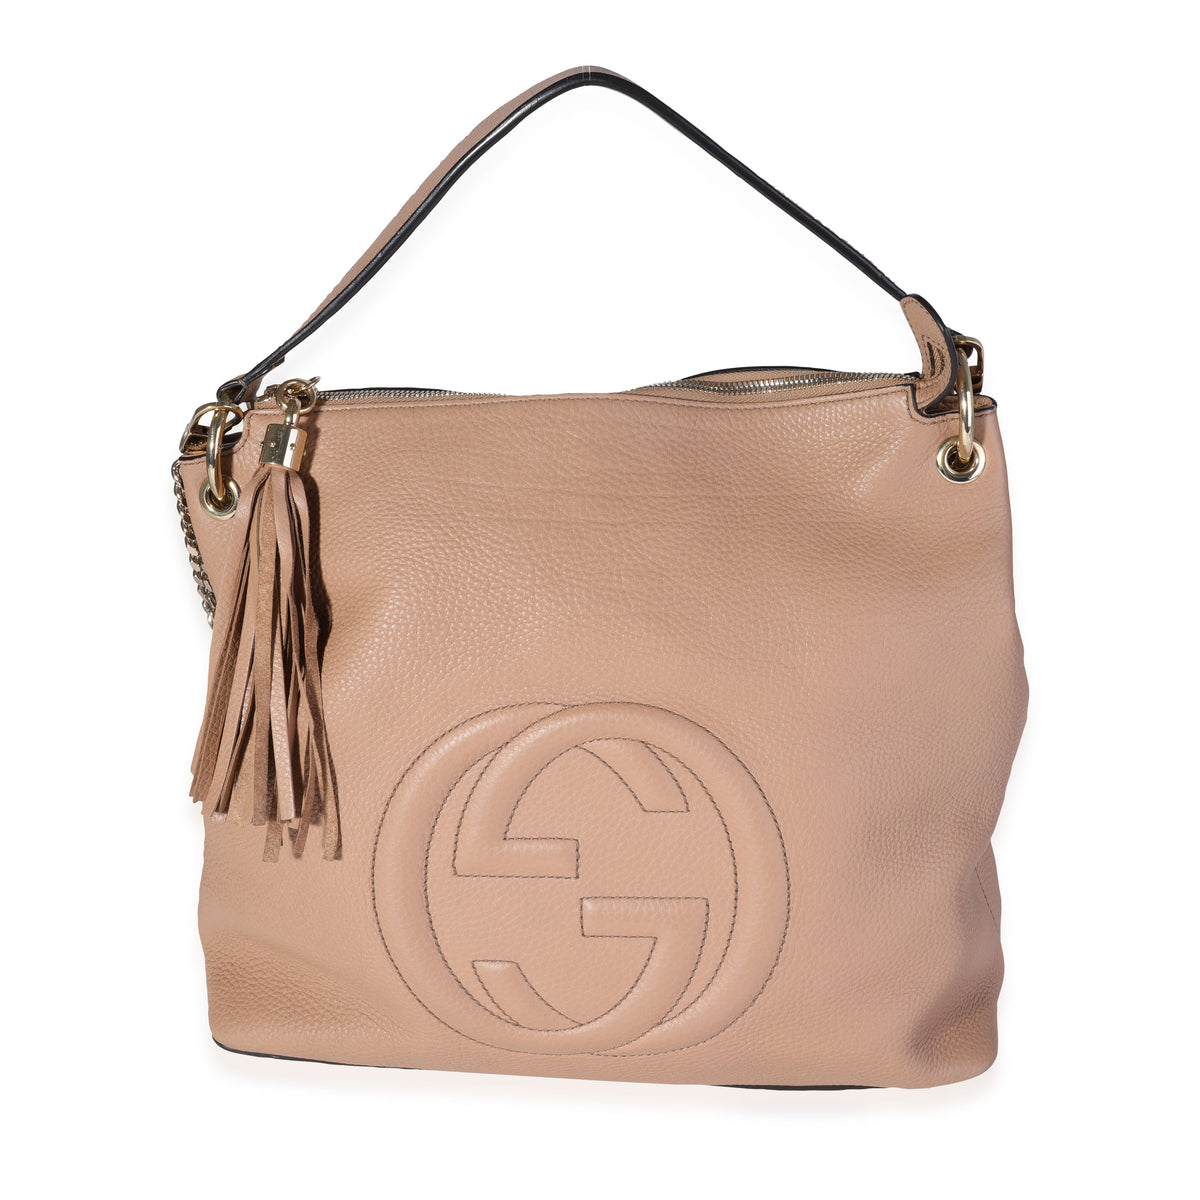 Gucci Soho Hobo Large Shoulder Bag